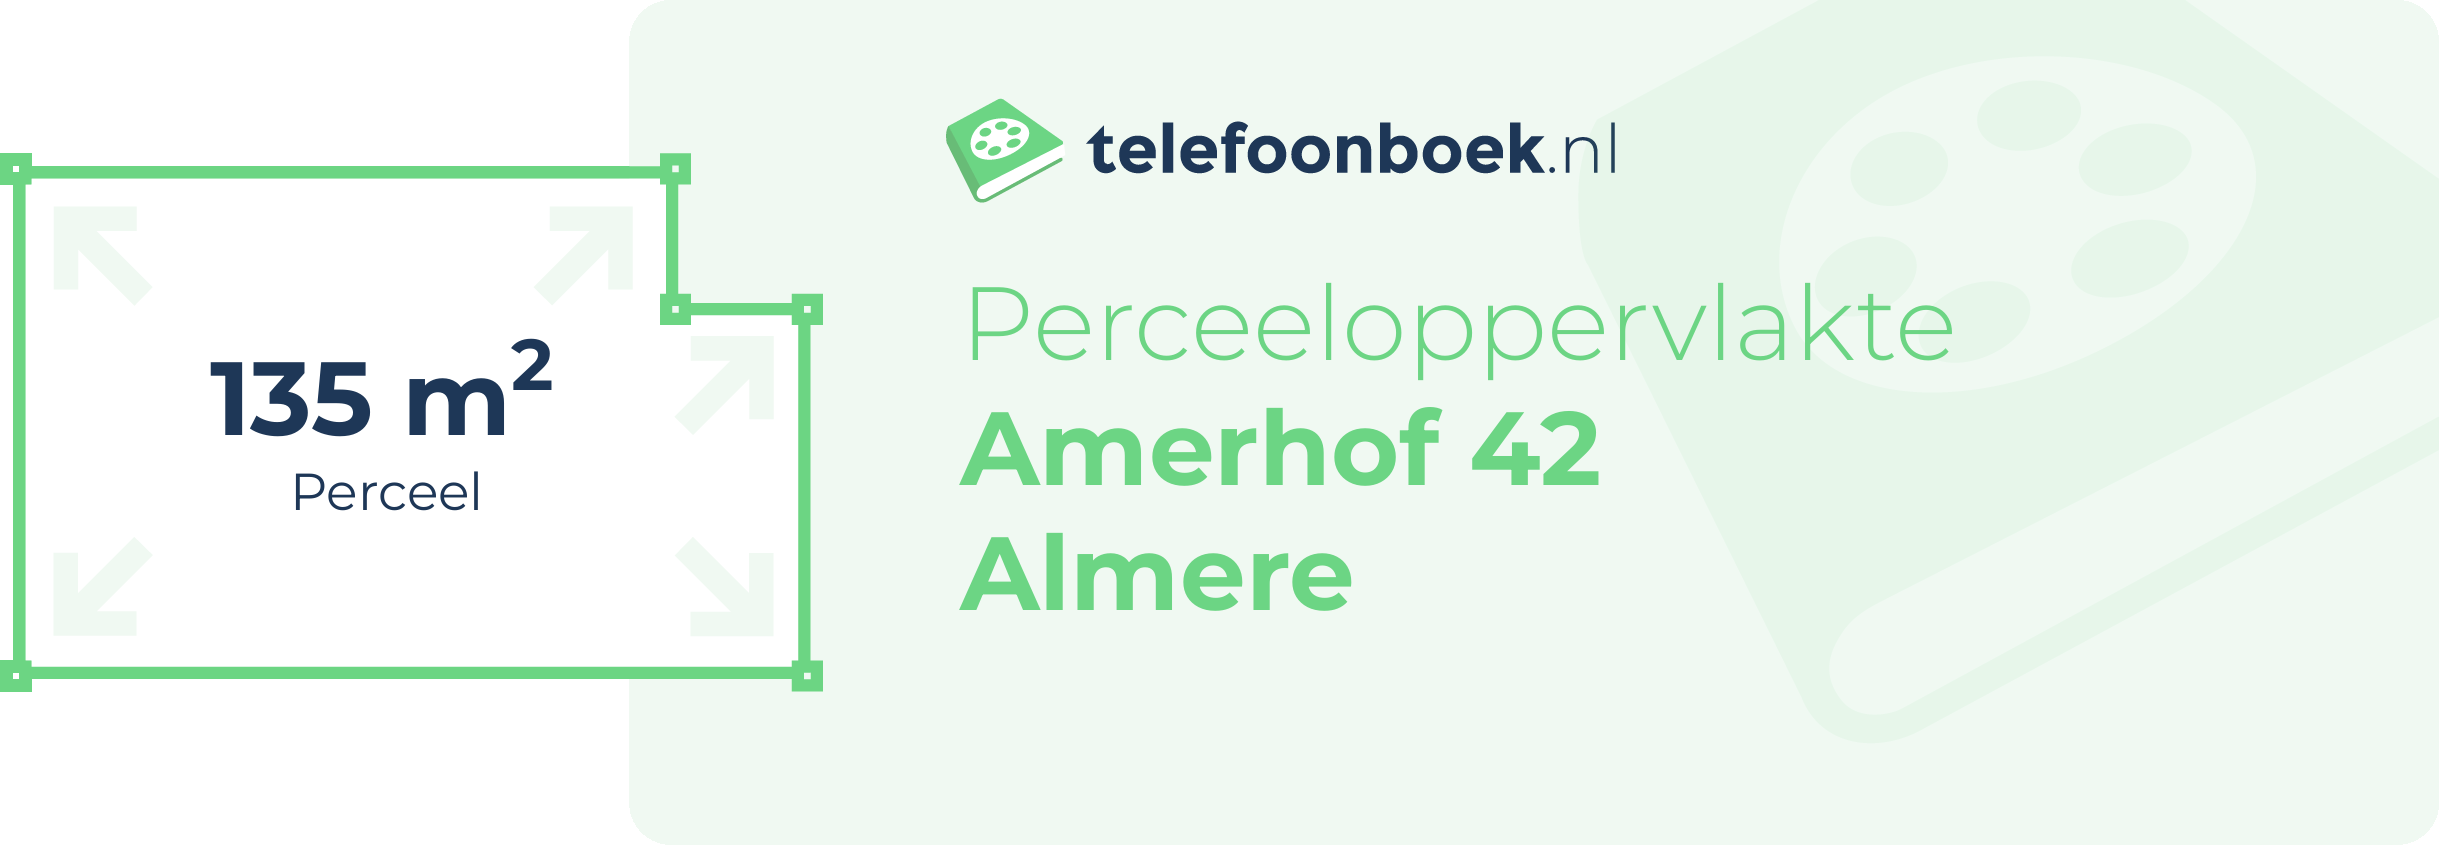 Perceeloppervlakte Amerhof 42 Almere